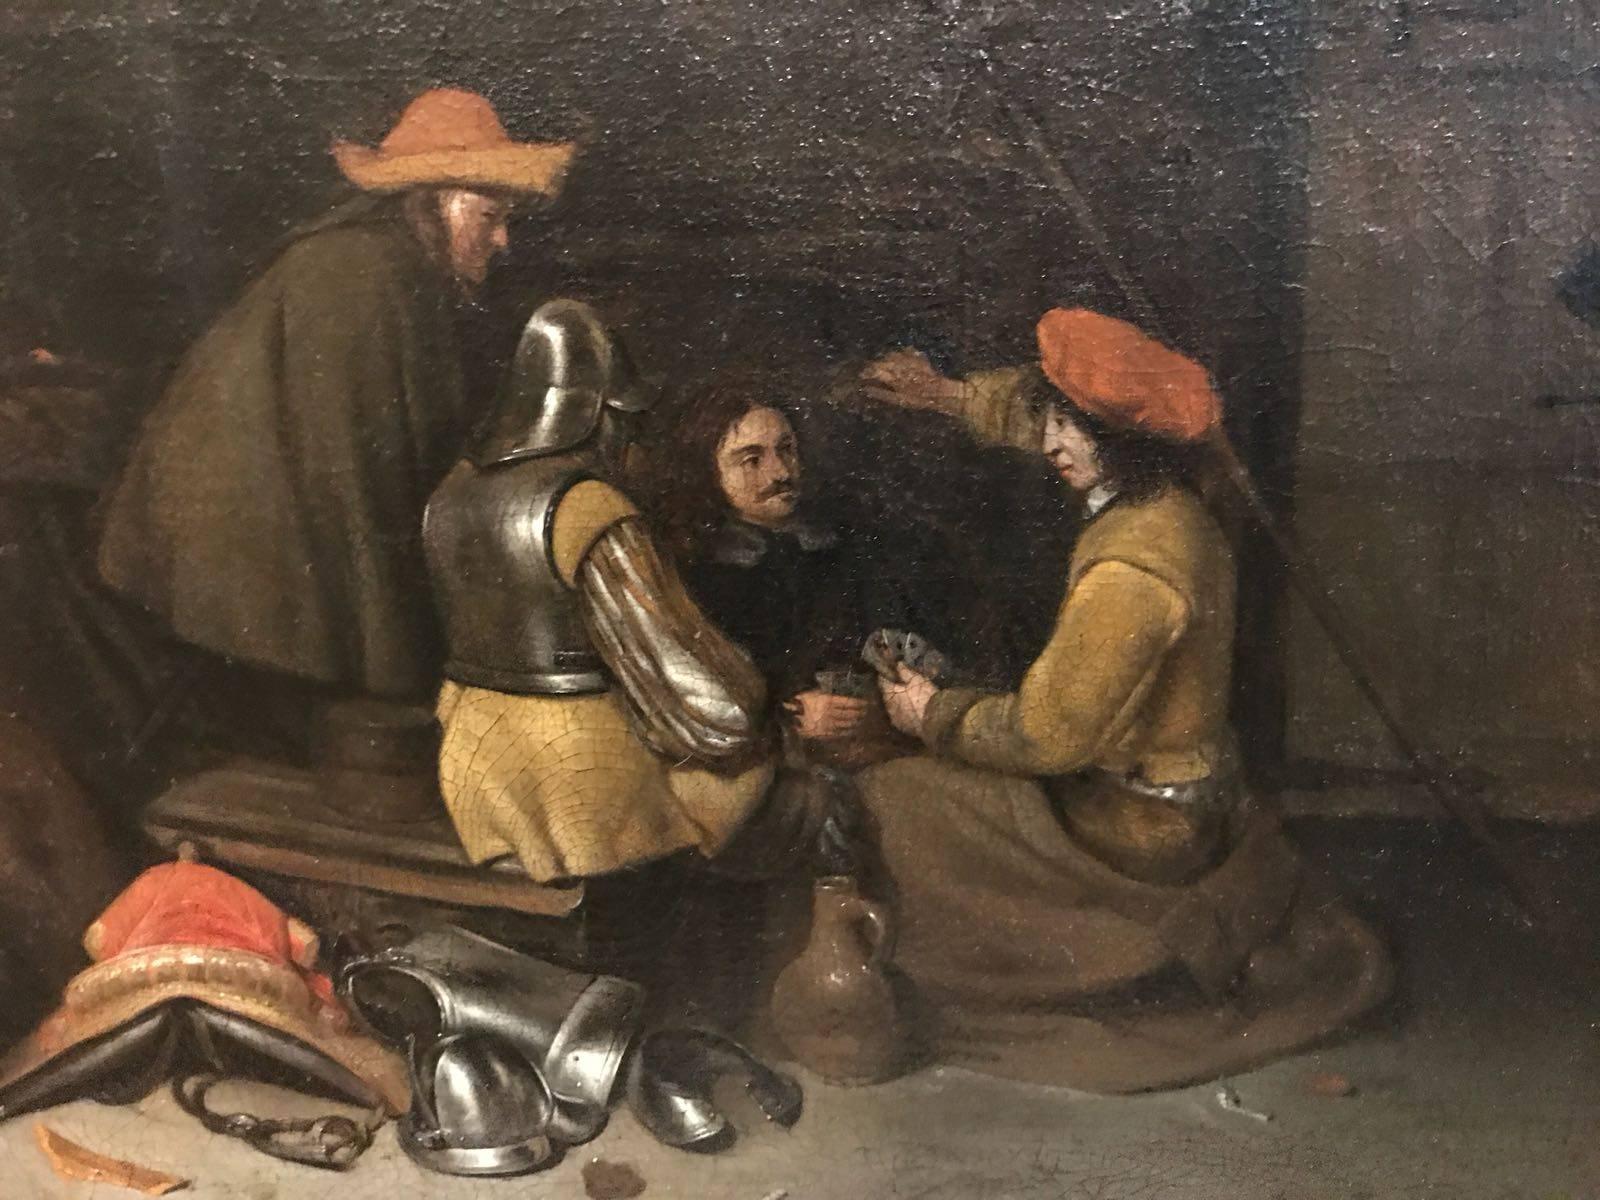 Niederländisches Ölgemälde aus dem 17. Jahrhundert – Das Kartenspiel von Ter Borch – Painting von Gerard ter Borch the Younger